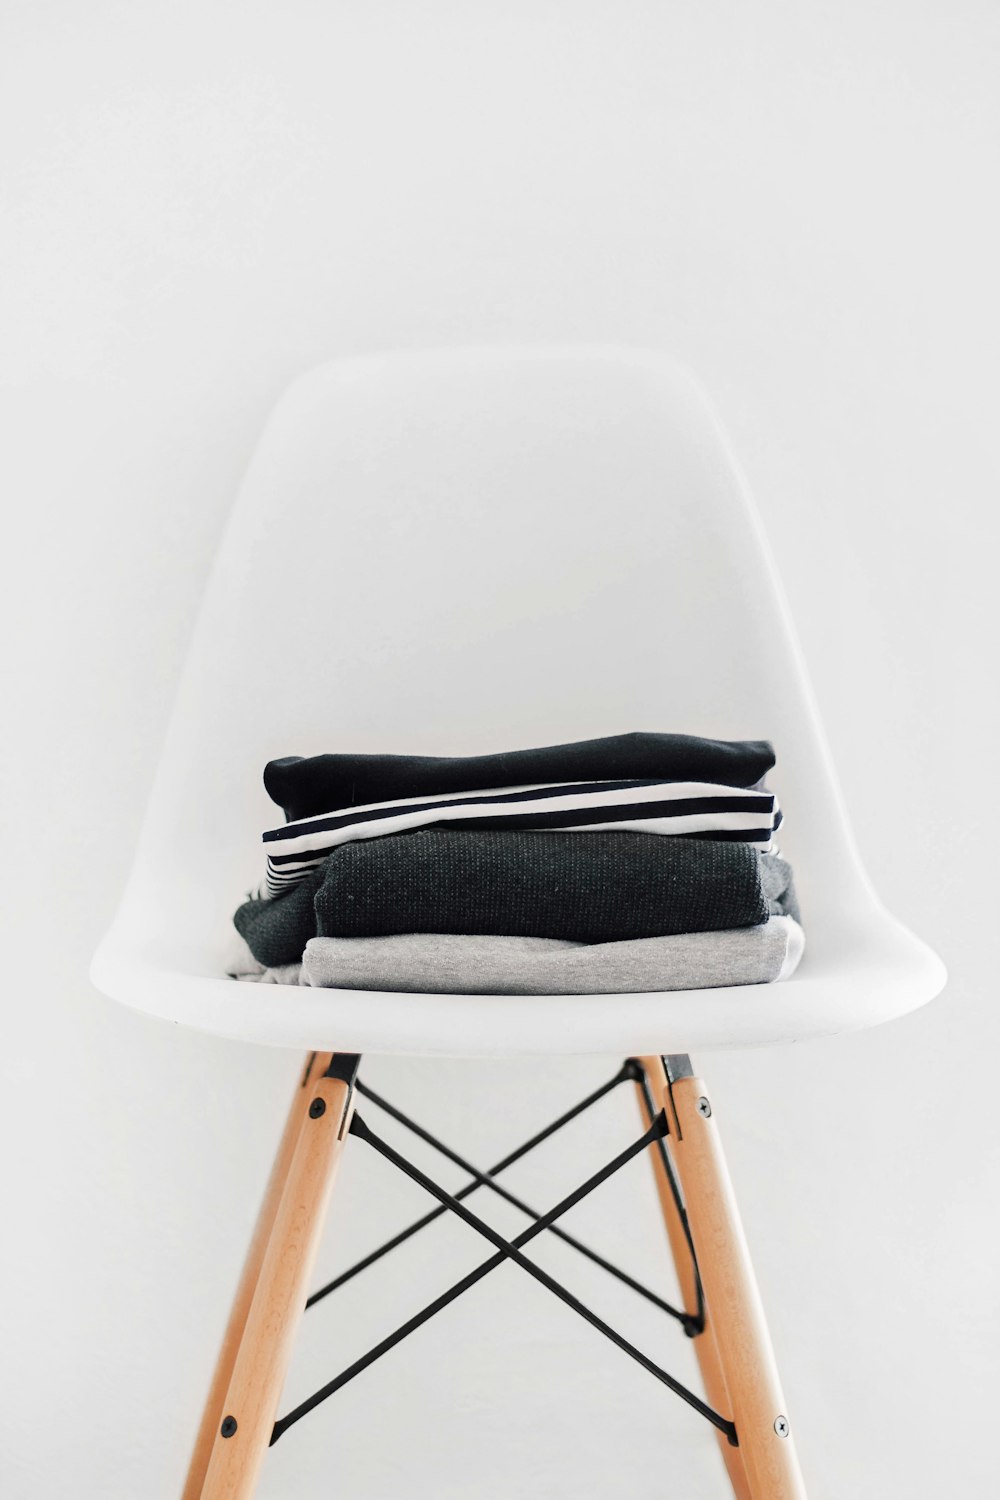 갈색 프레임이 있는 흰색 패딩 의자에 검은색, 흰색, 회색 직물 더미